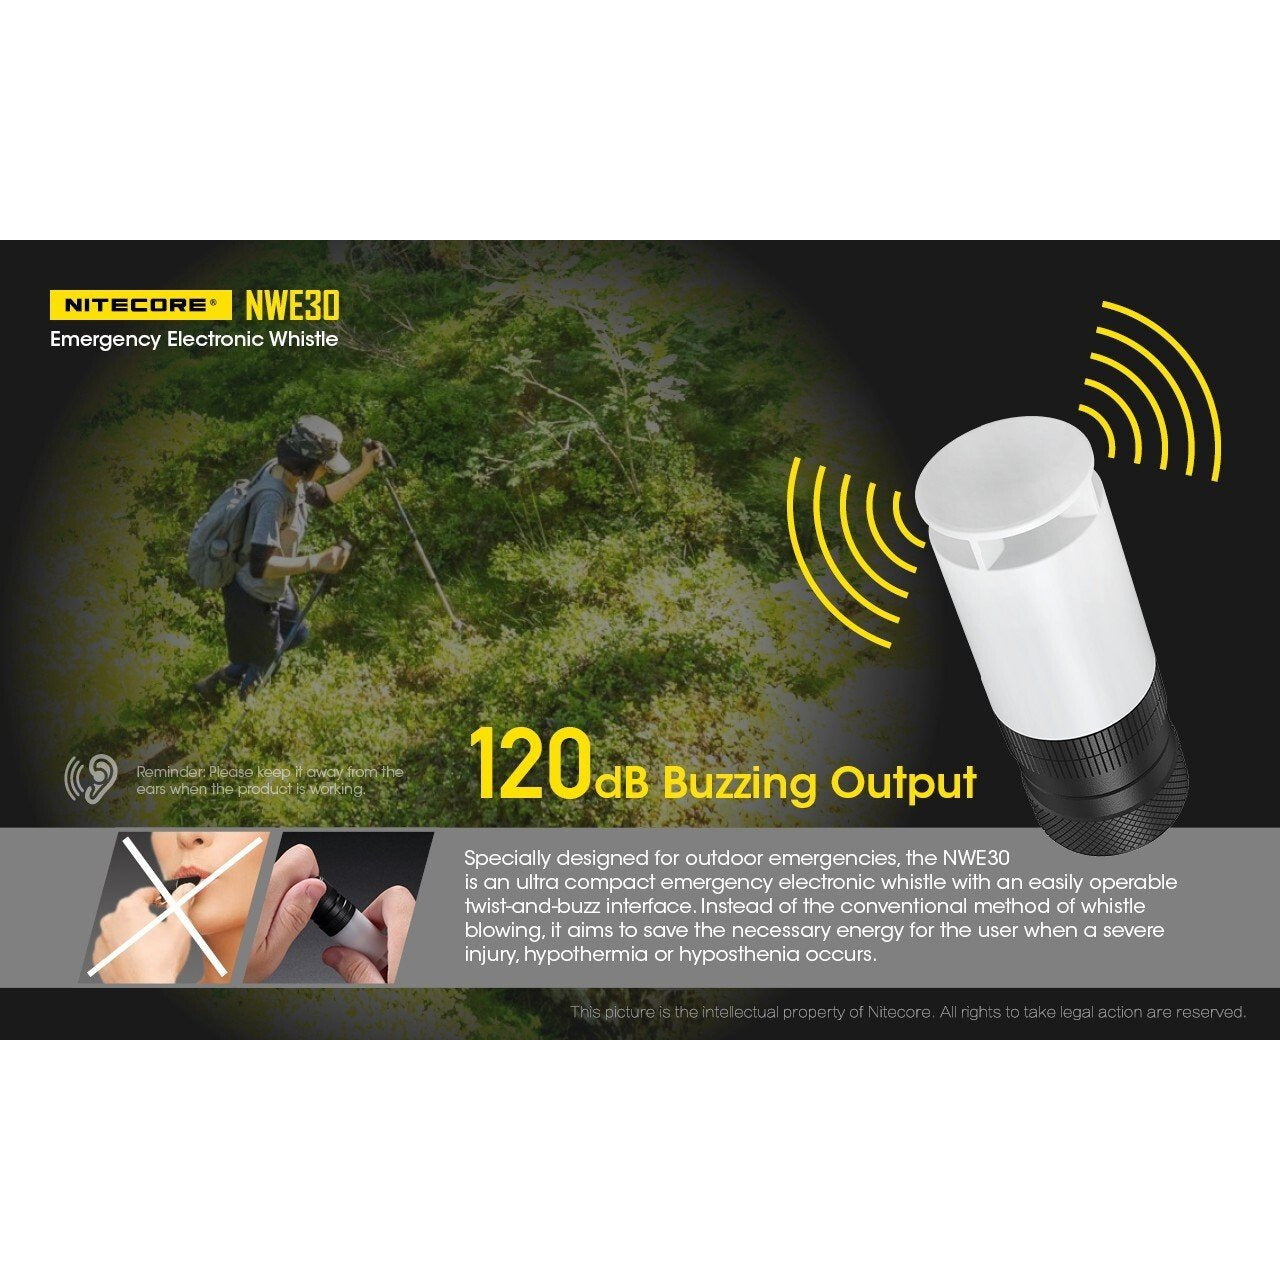 Nitecore Nitecore Emergency Electronic Whistle 120Db Buzzing Output And Beacon - 2000 Lumen Multifunction Flashlight #nwe30 Dark Olive Green